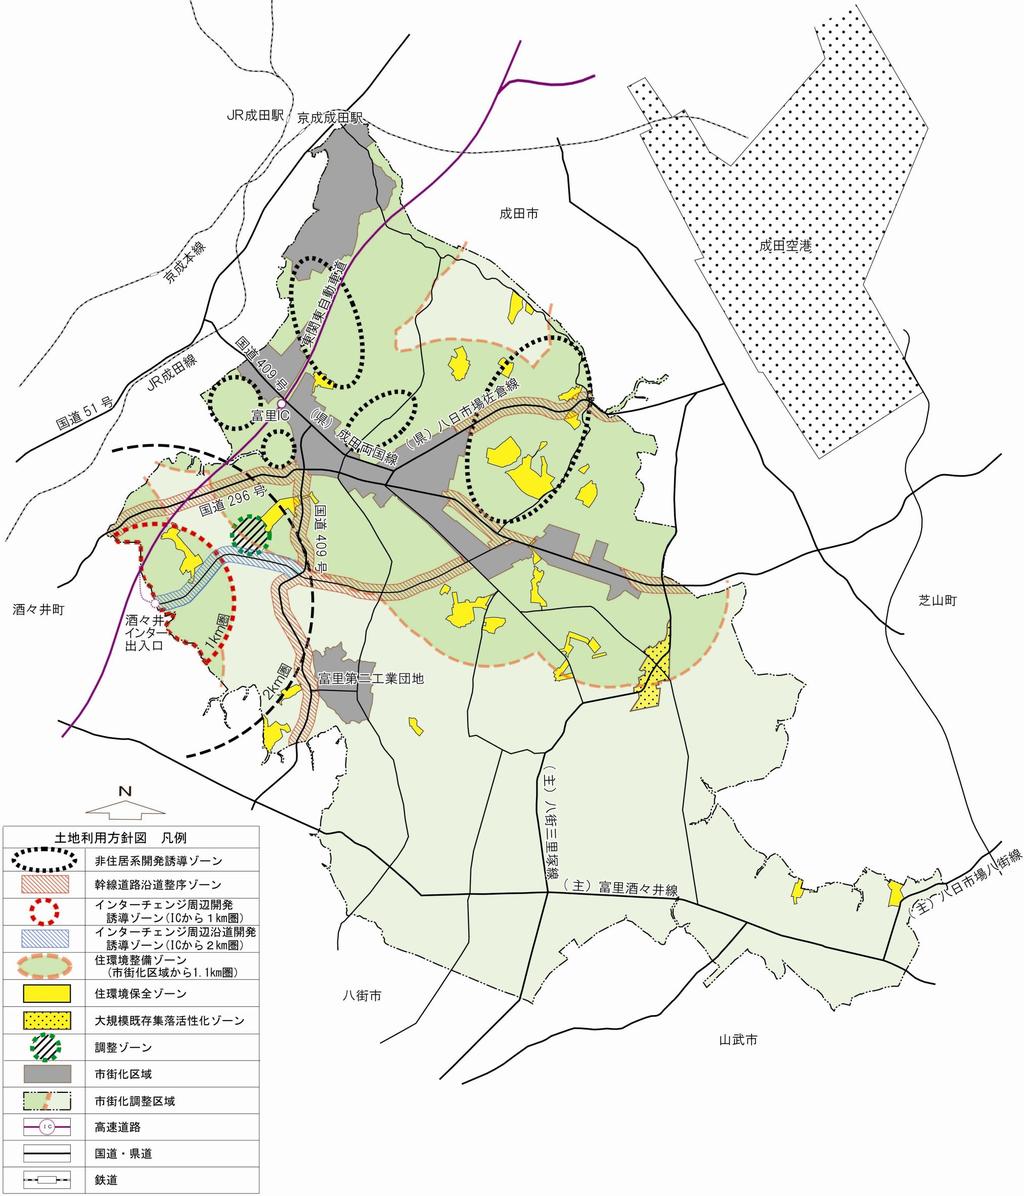 12 6 土地利用方針図 *( 参考 ) 大規模既存集落指定地域 大規模集落活性化ゾーン 十倉